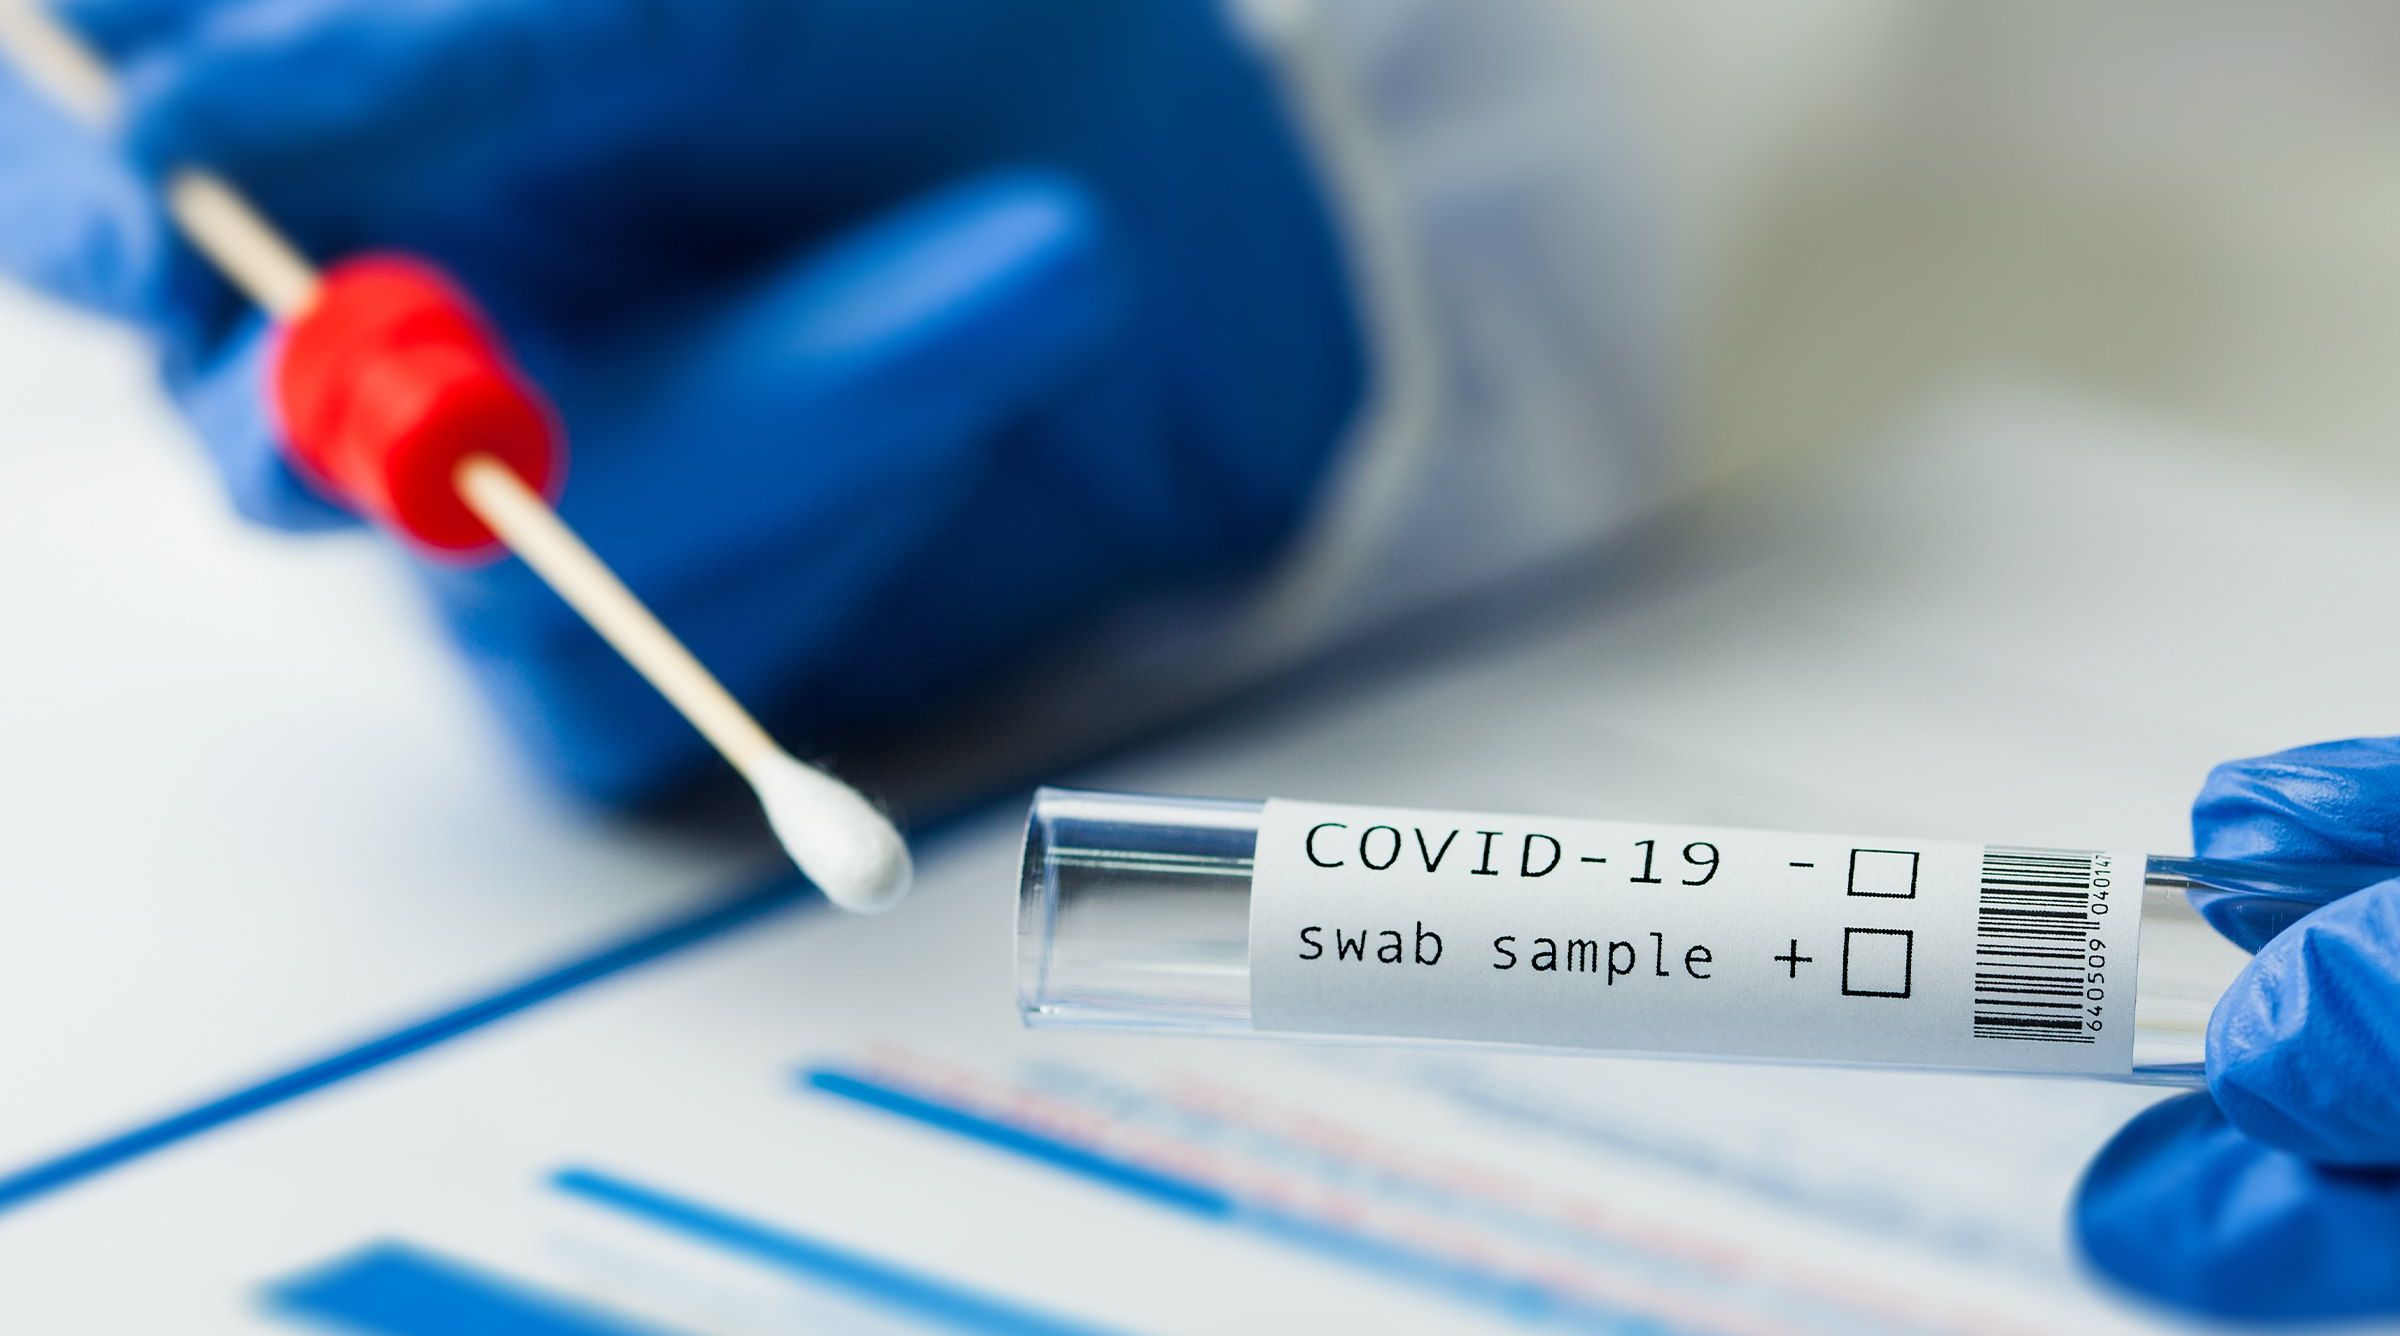 دراسة تؤكد فعالية المسح الشامل والاختبارات الجماعية في احتواء فيروس كورونا في دولة الإمارات